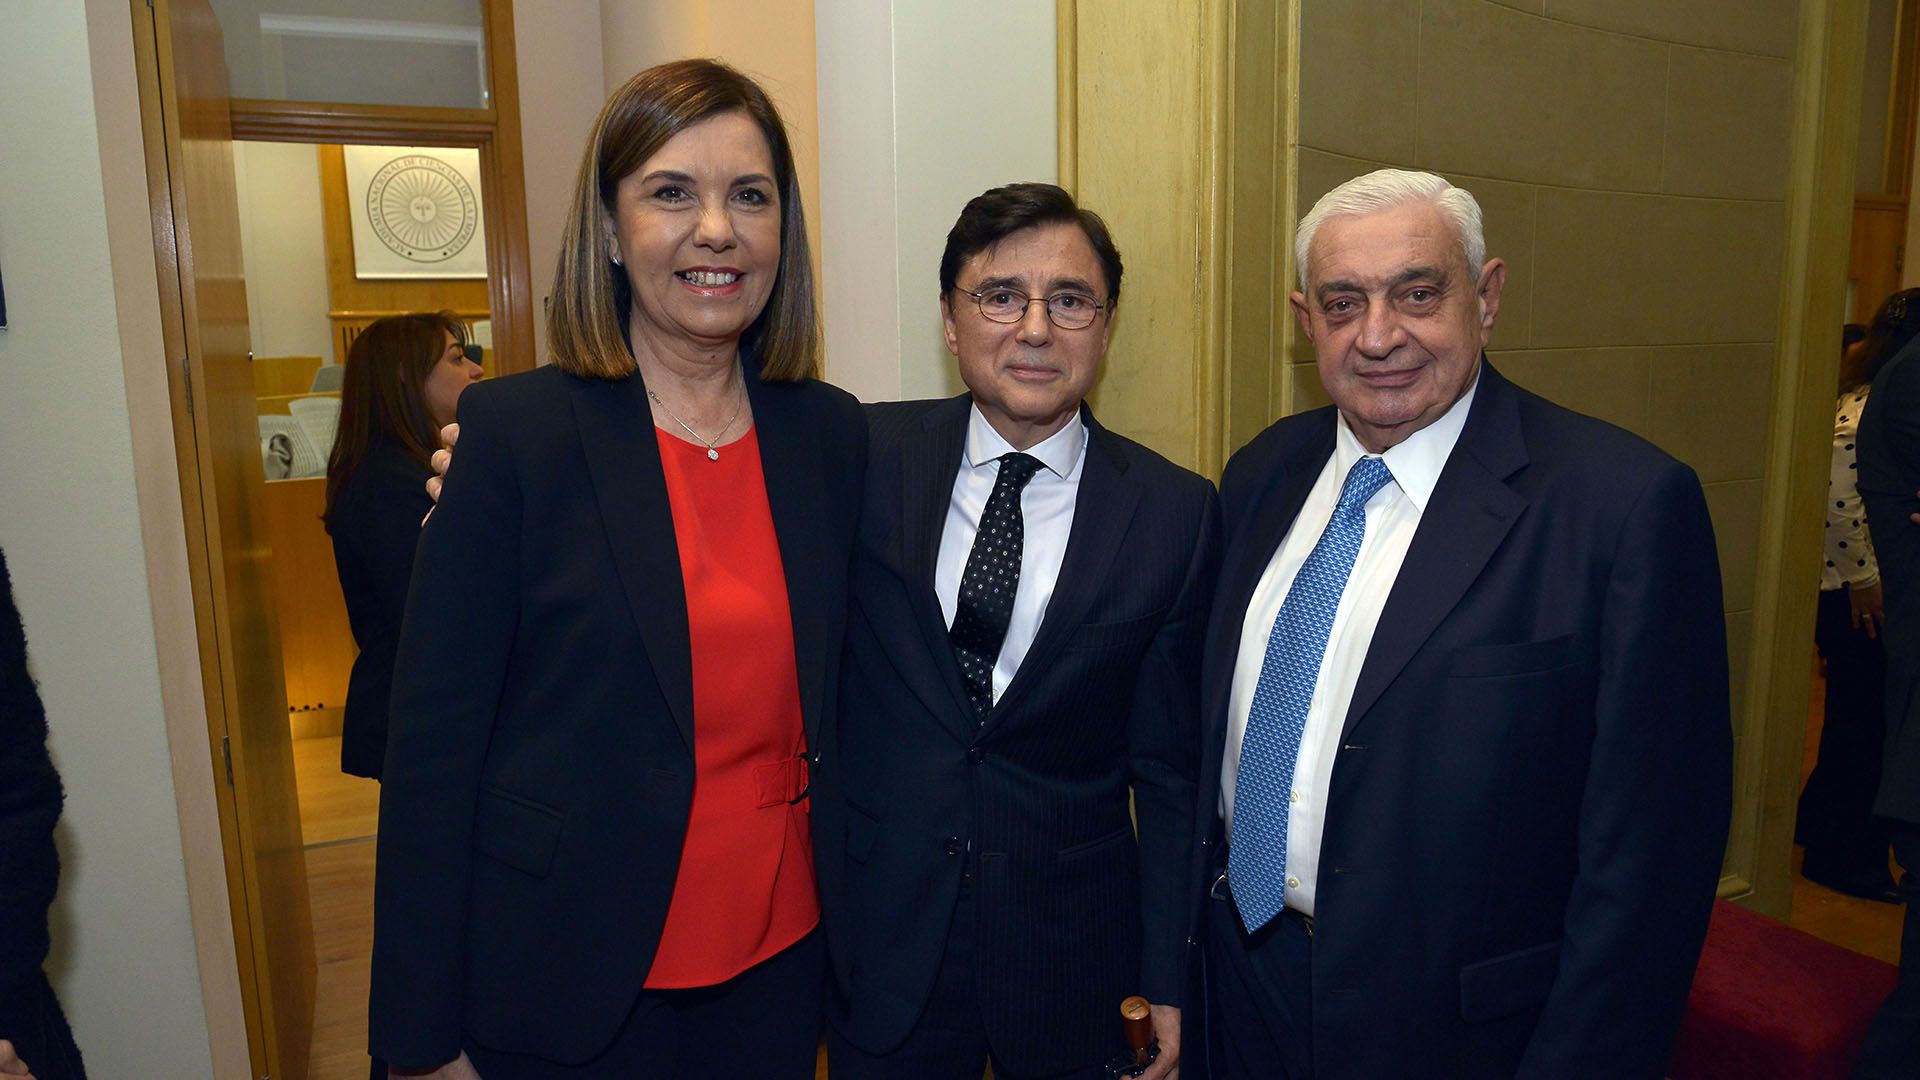 Liliana Parodi, gerente de programación de América; Jorge Fontevecchia, de Perfil; y Adelmo Gabbi, presidente de la Bolsa de Comercio de Buenos Aires